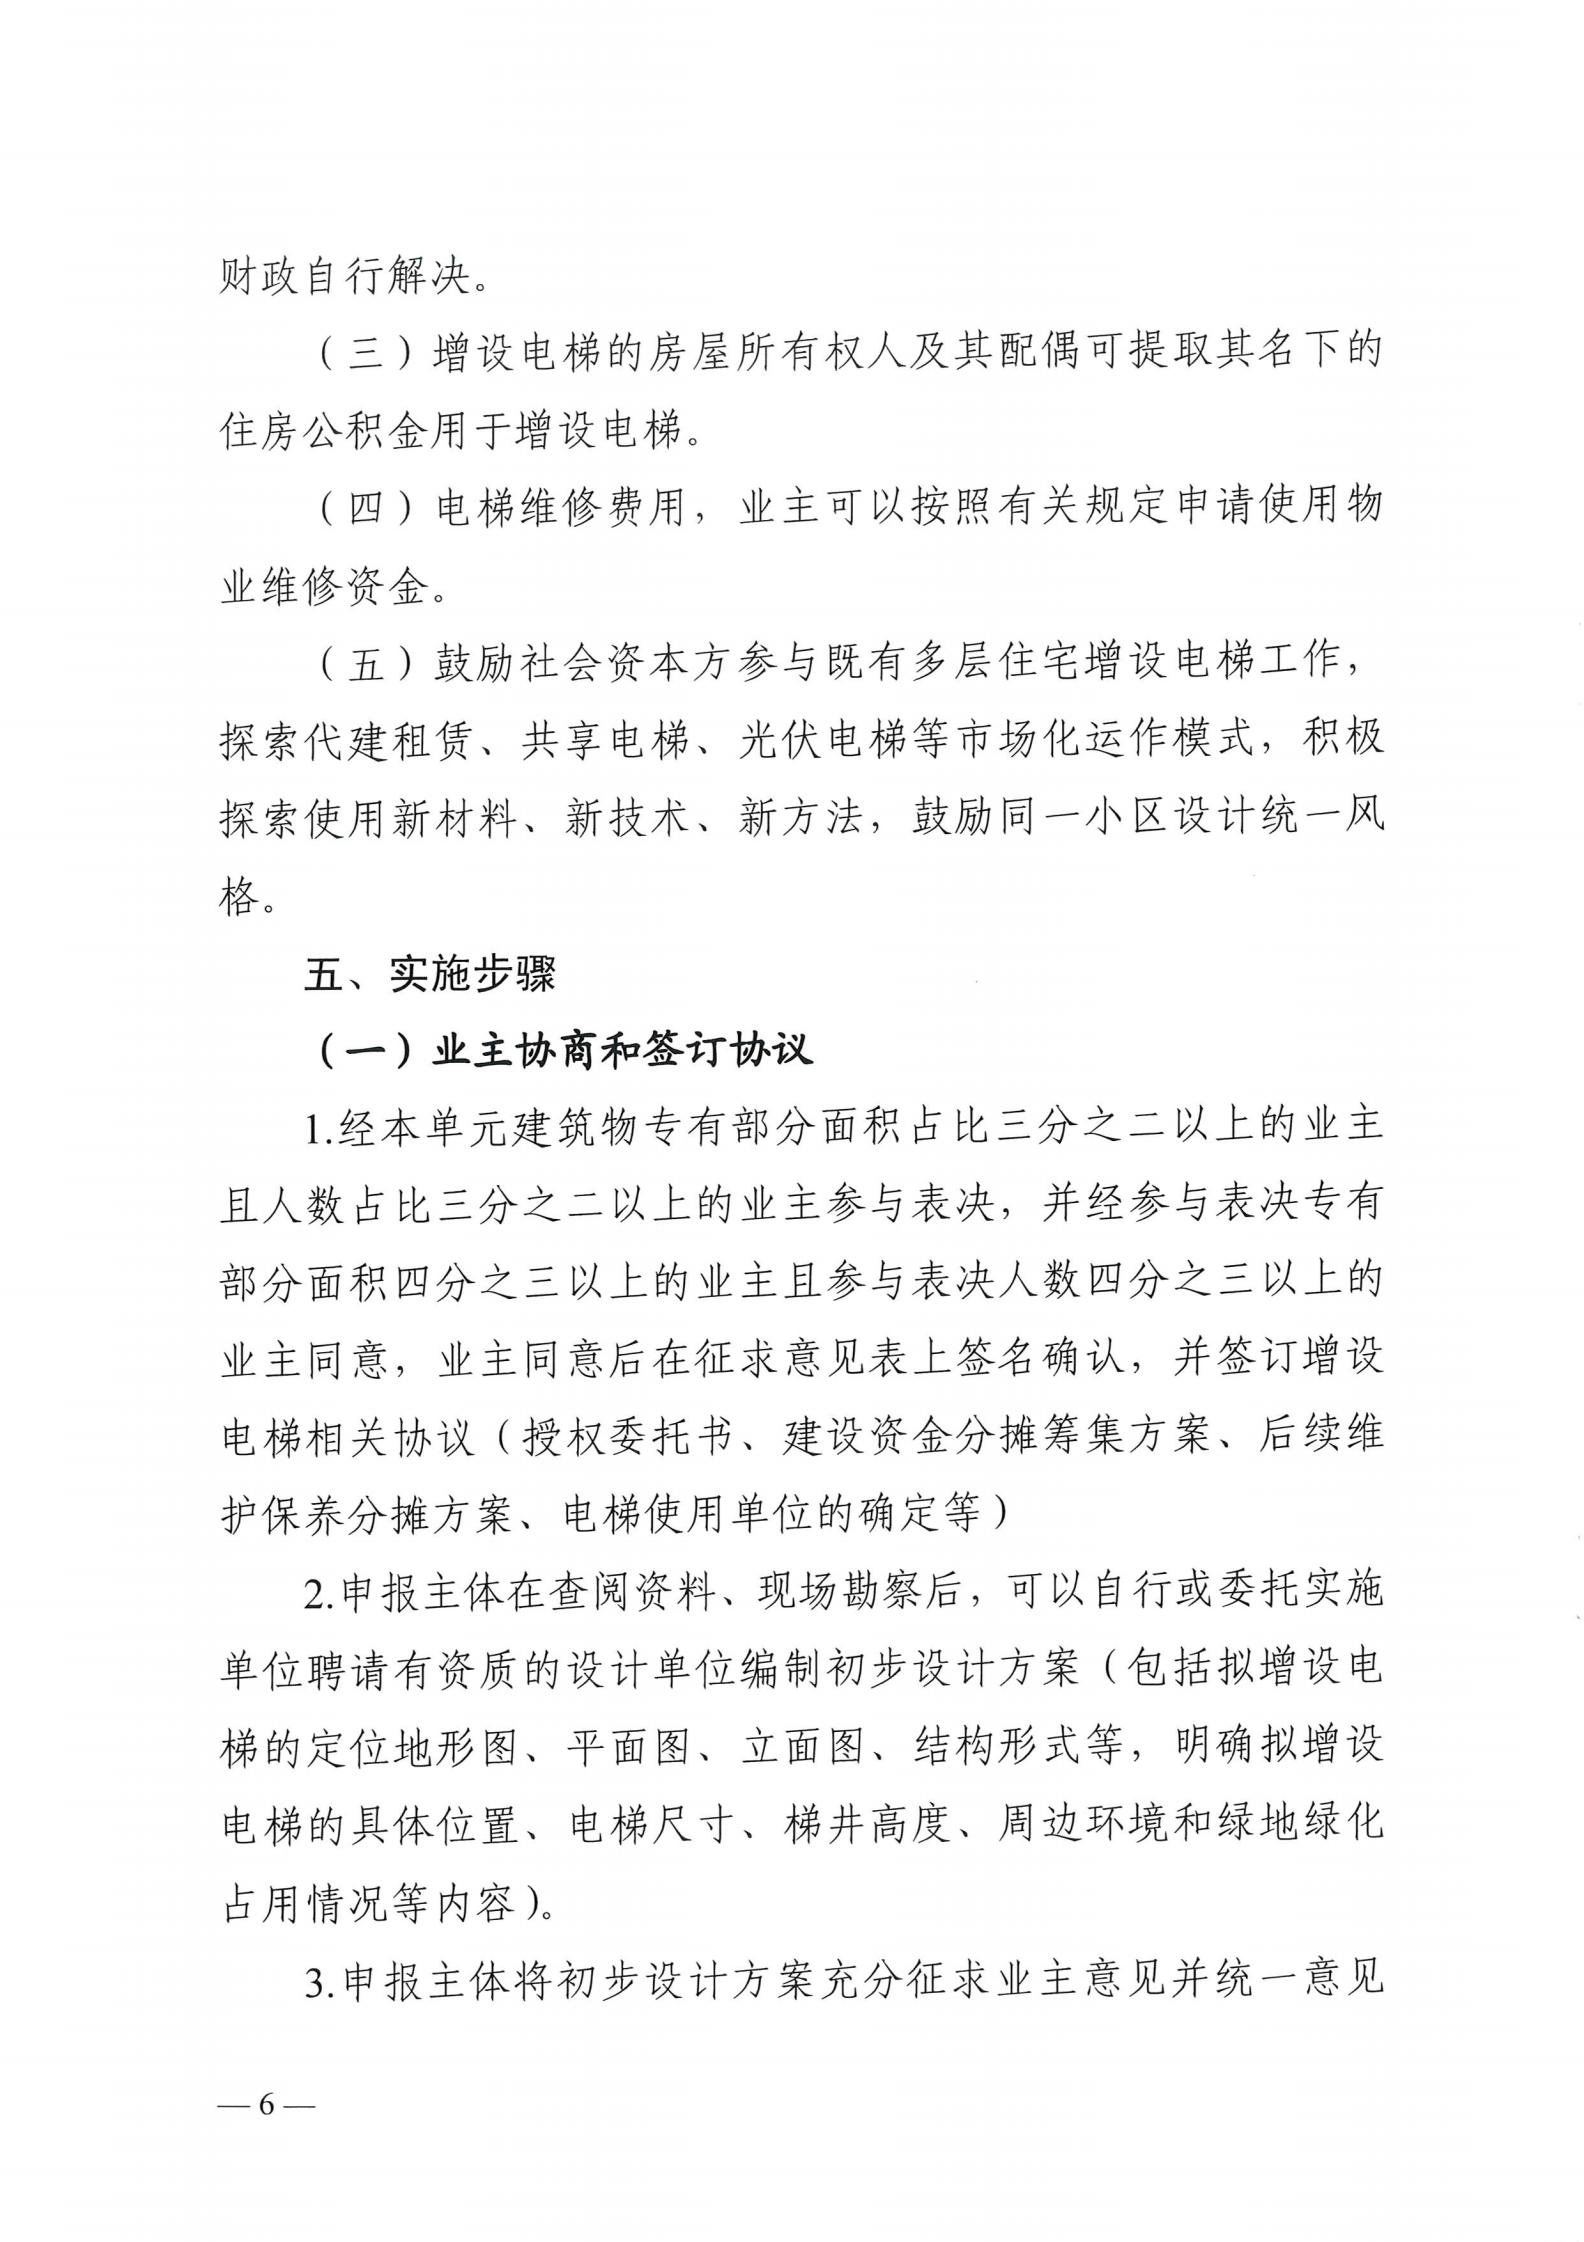 湘潭市六部门印发有关加装电梯的通知(图6)